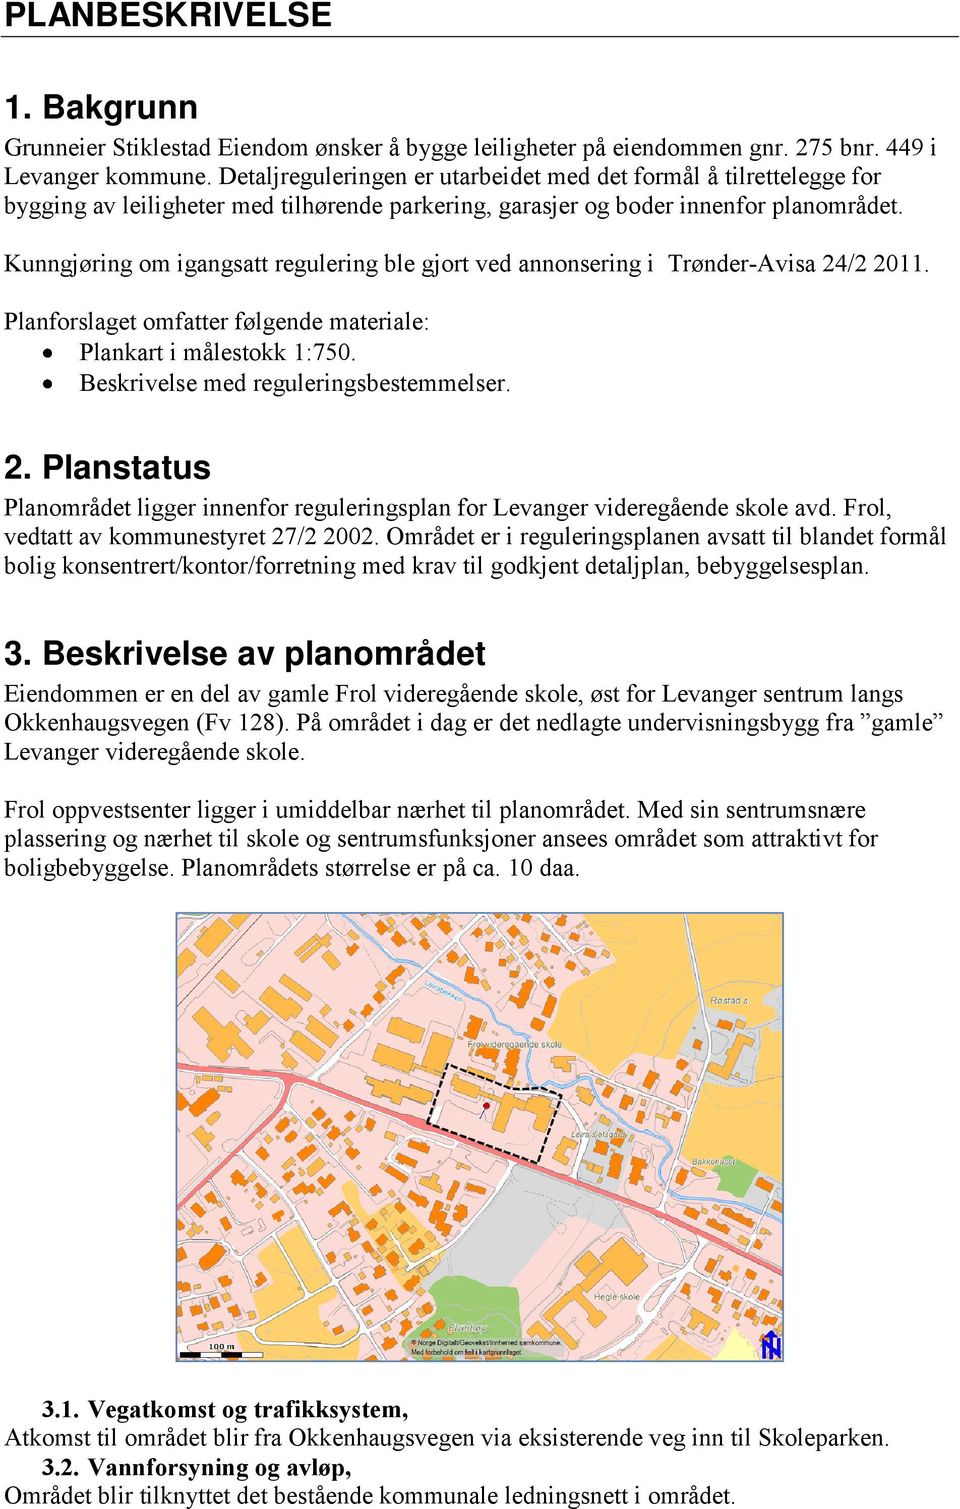 Kunngjøring om igangsatt regulering ble gjort ved annonsering i Trønder-Avisa 24/2 2011. Planforslaget omfatter følgende materiale: Plankart i målestokk 1:750. Beskrivelse med reguleringsbestemmelser.